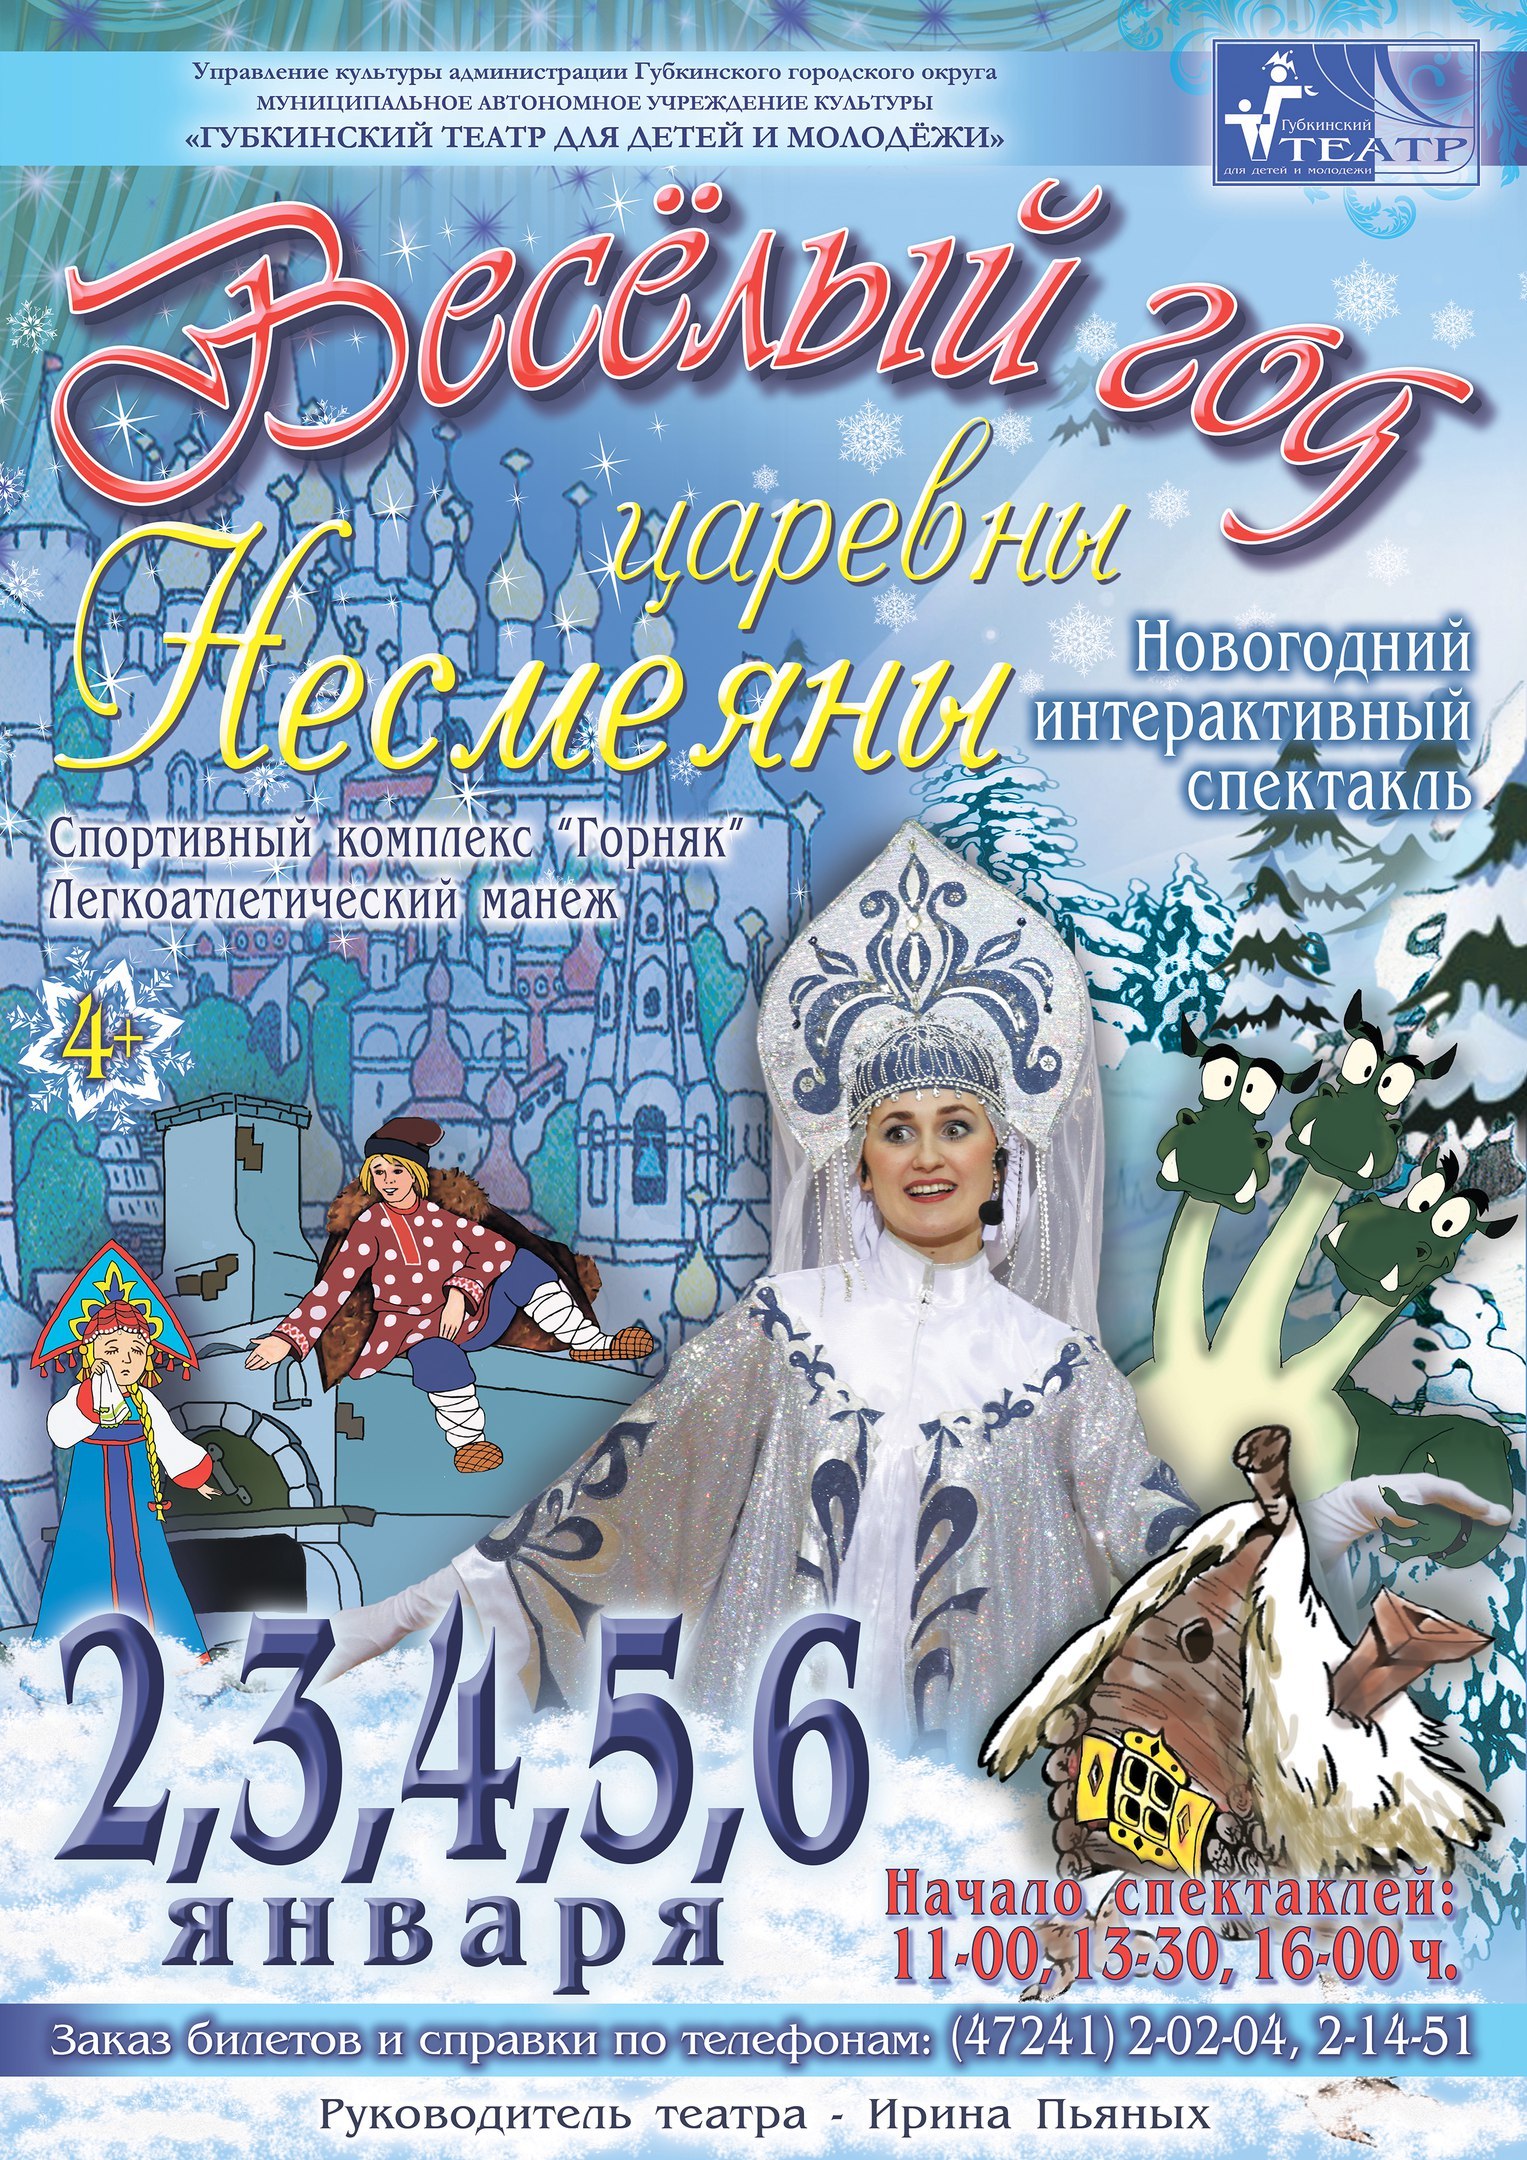 Спектакль «Веселый год царевны Несмеяны» в Губкине